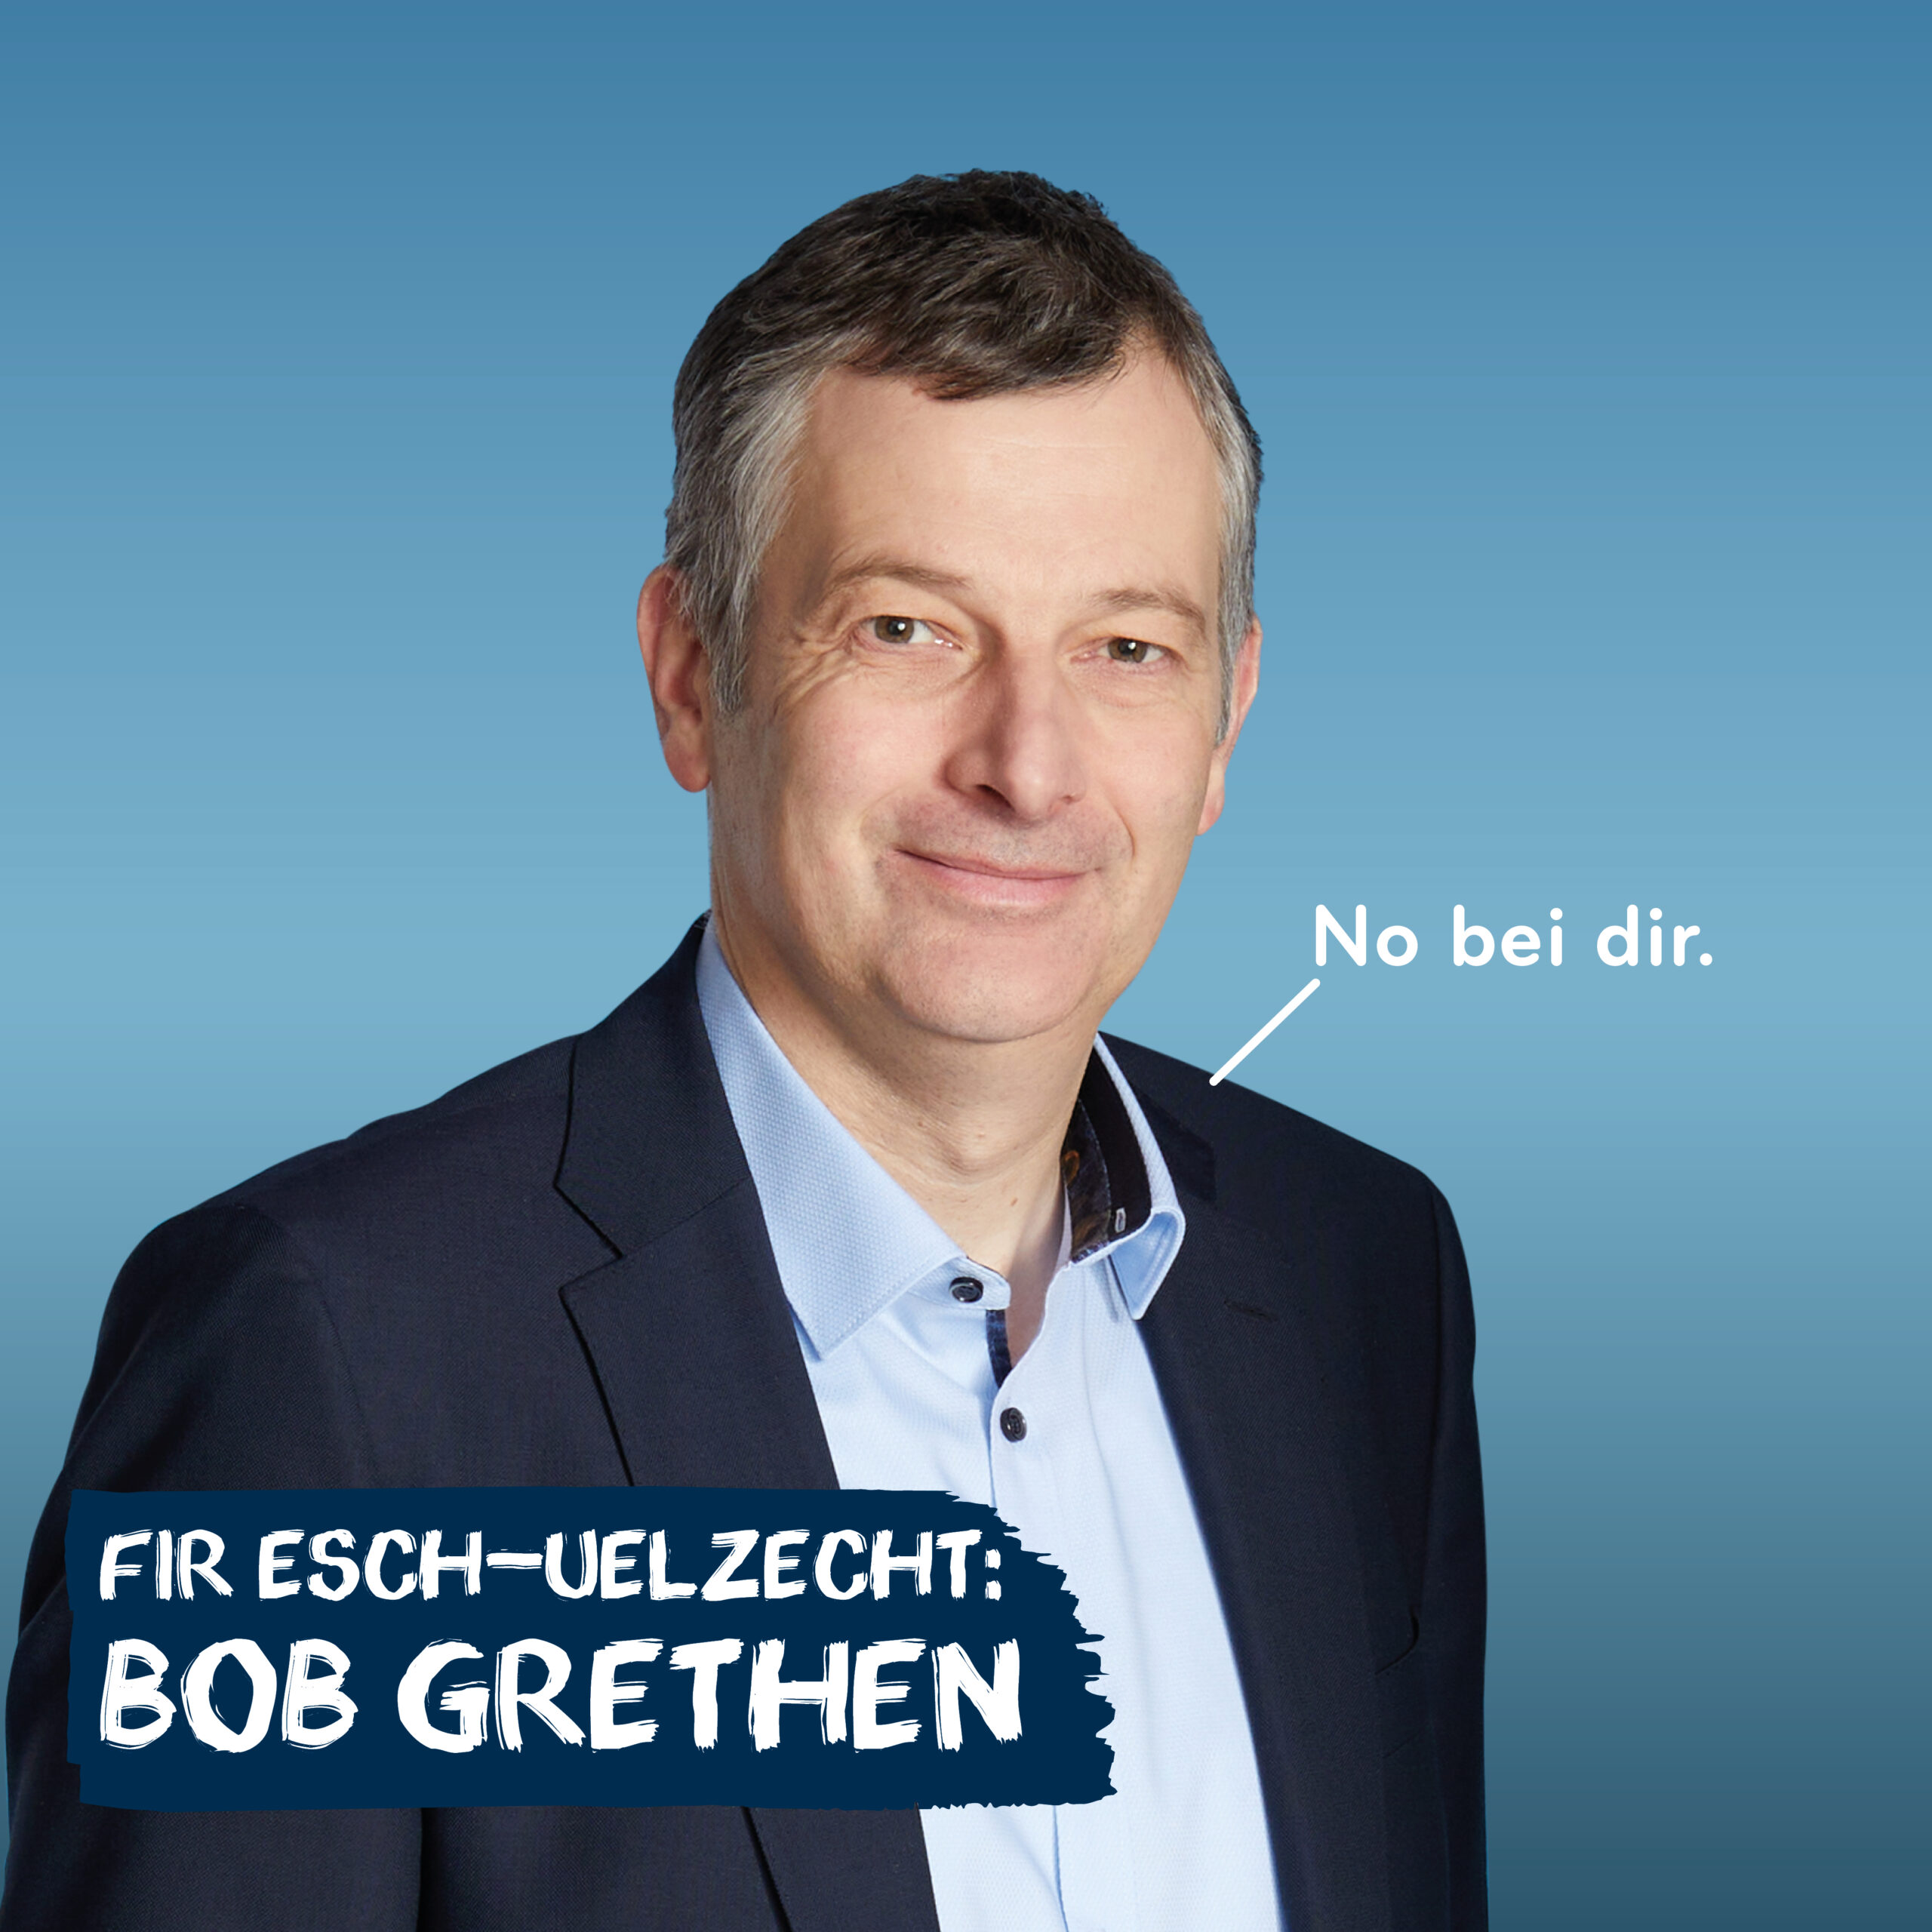 esch---grethen-bob_52793045959_o